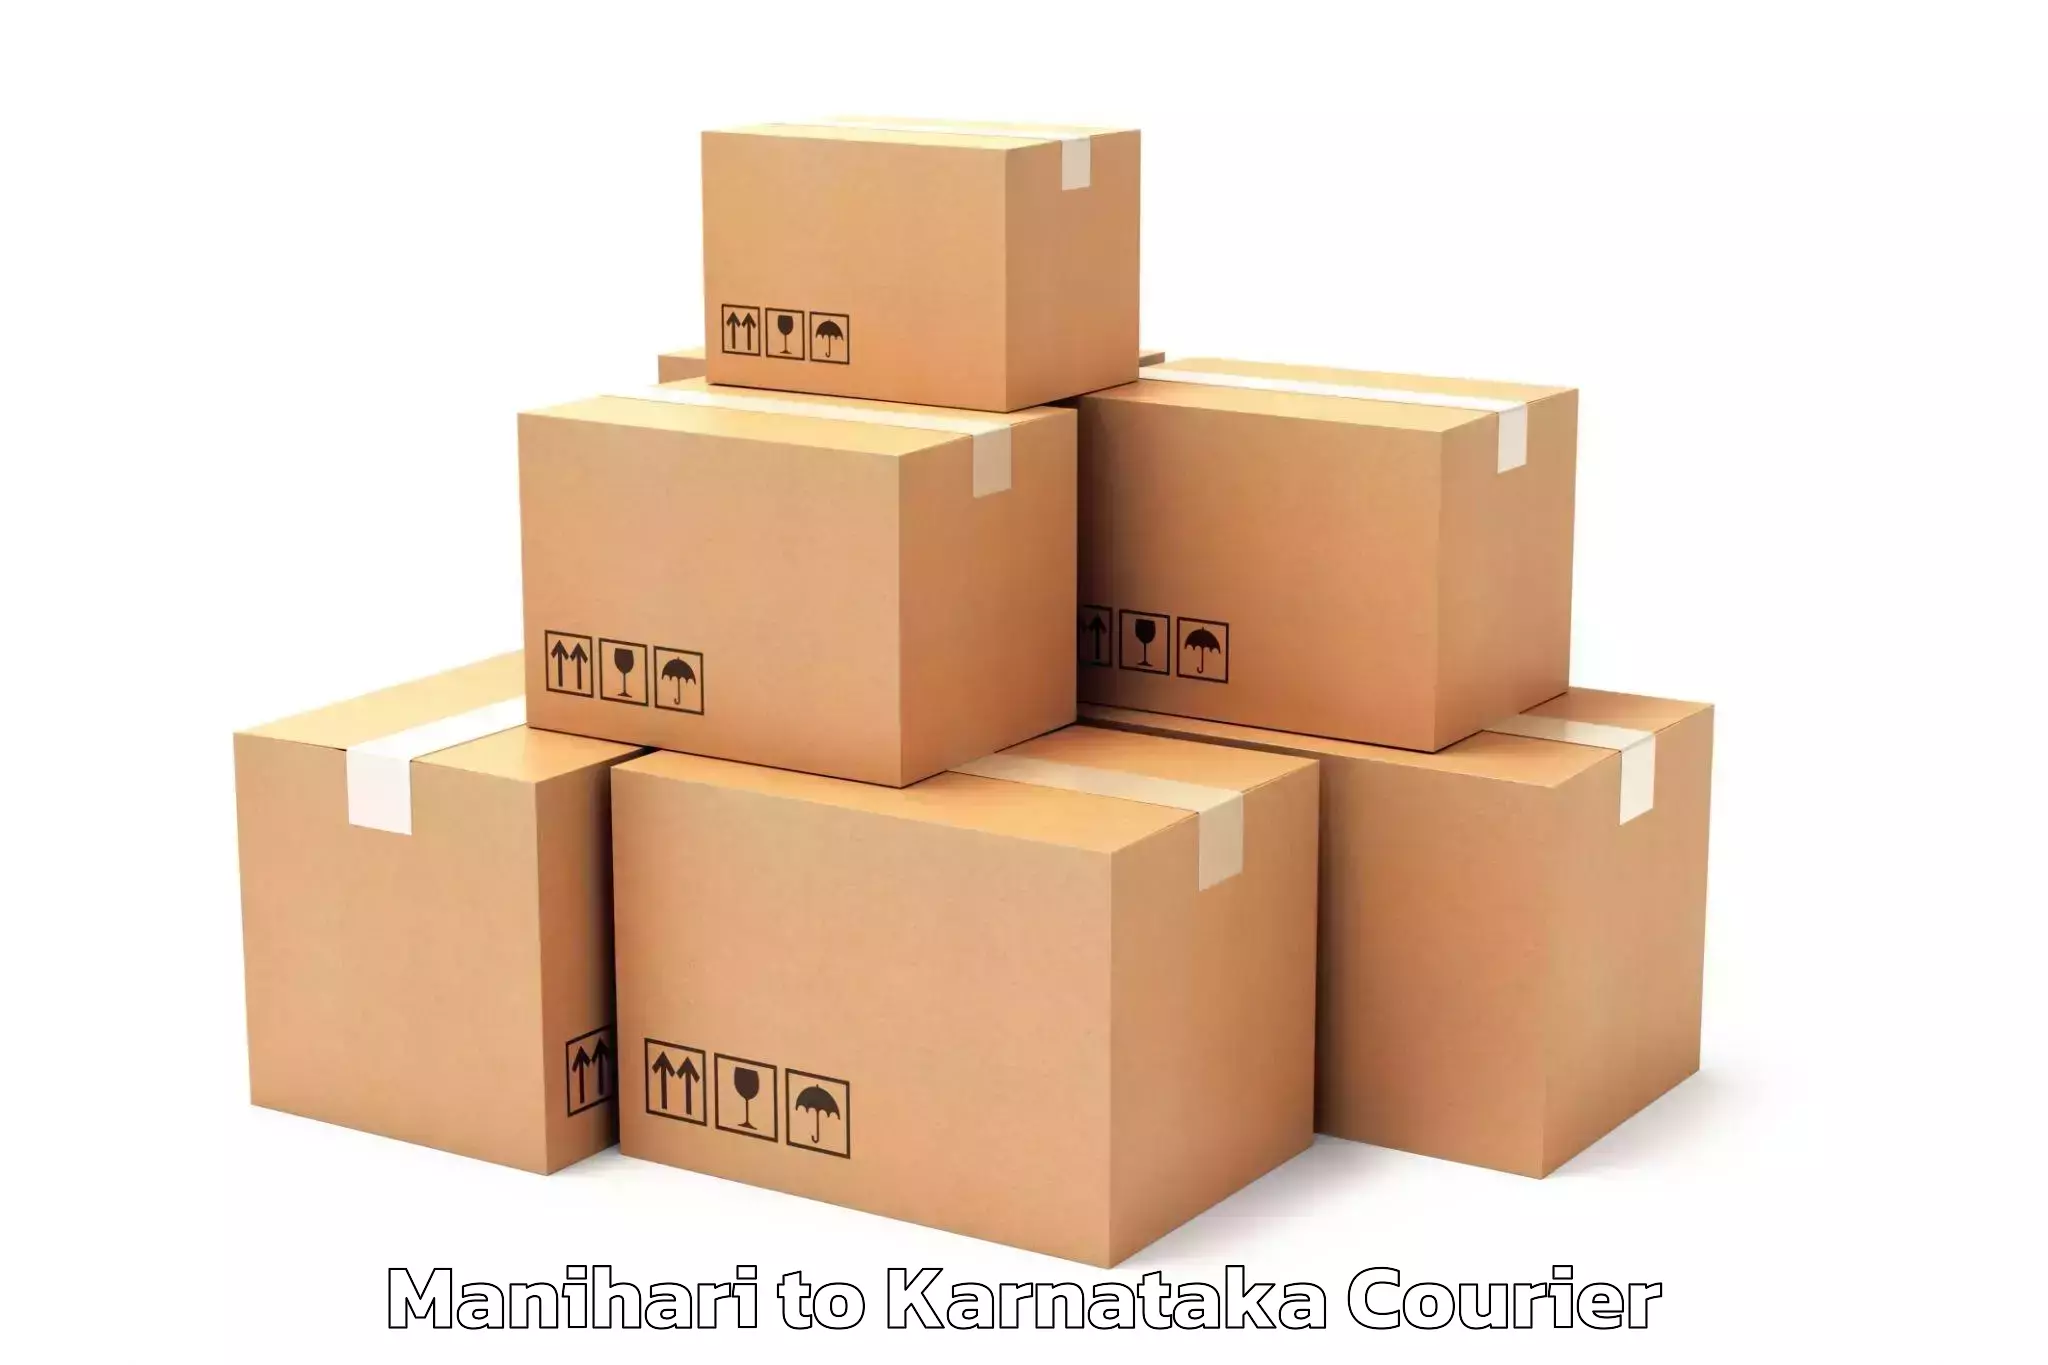 Furniture delivery service Manihari to Mangalore Port